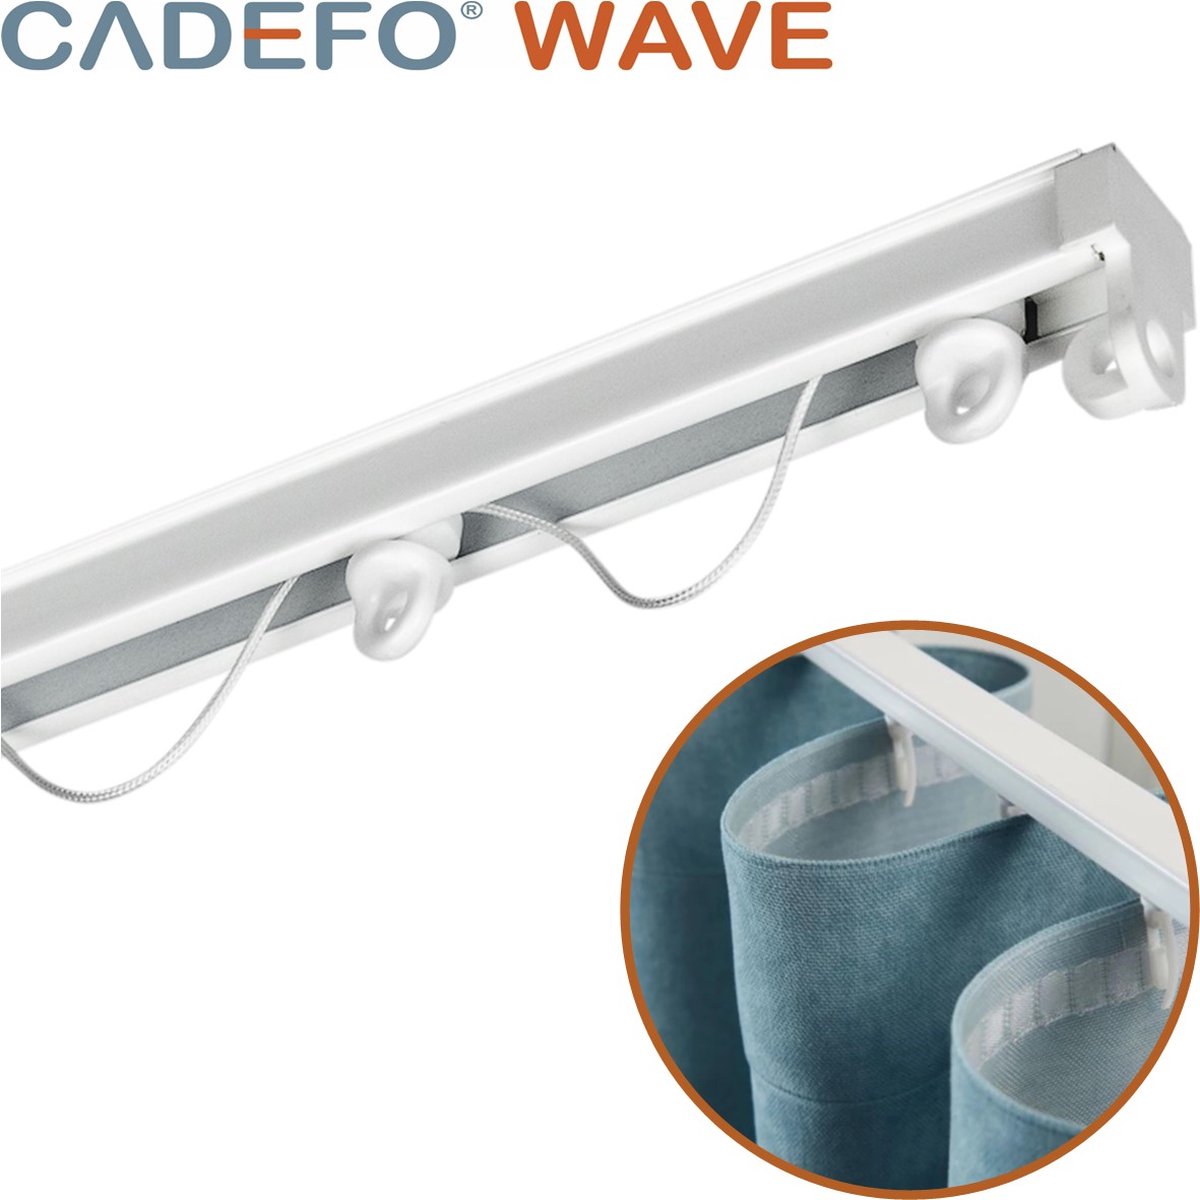 CADEFO WAVE (151 - 200 cm) Gordijnrails - Compleet op maat! - UIT 1 STUK - Leverbaar tot 6 meter - Plafondbevestiging - Lengte 184 cm